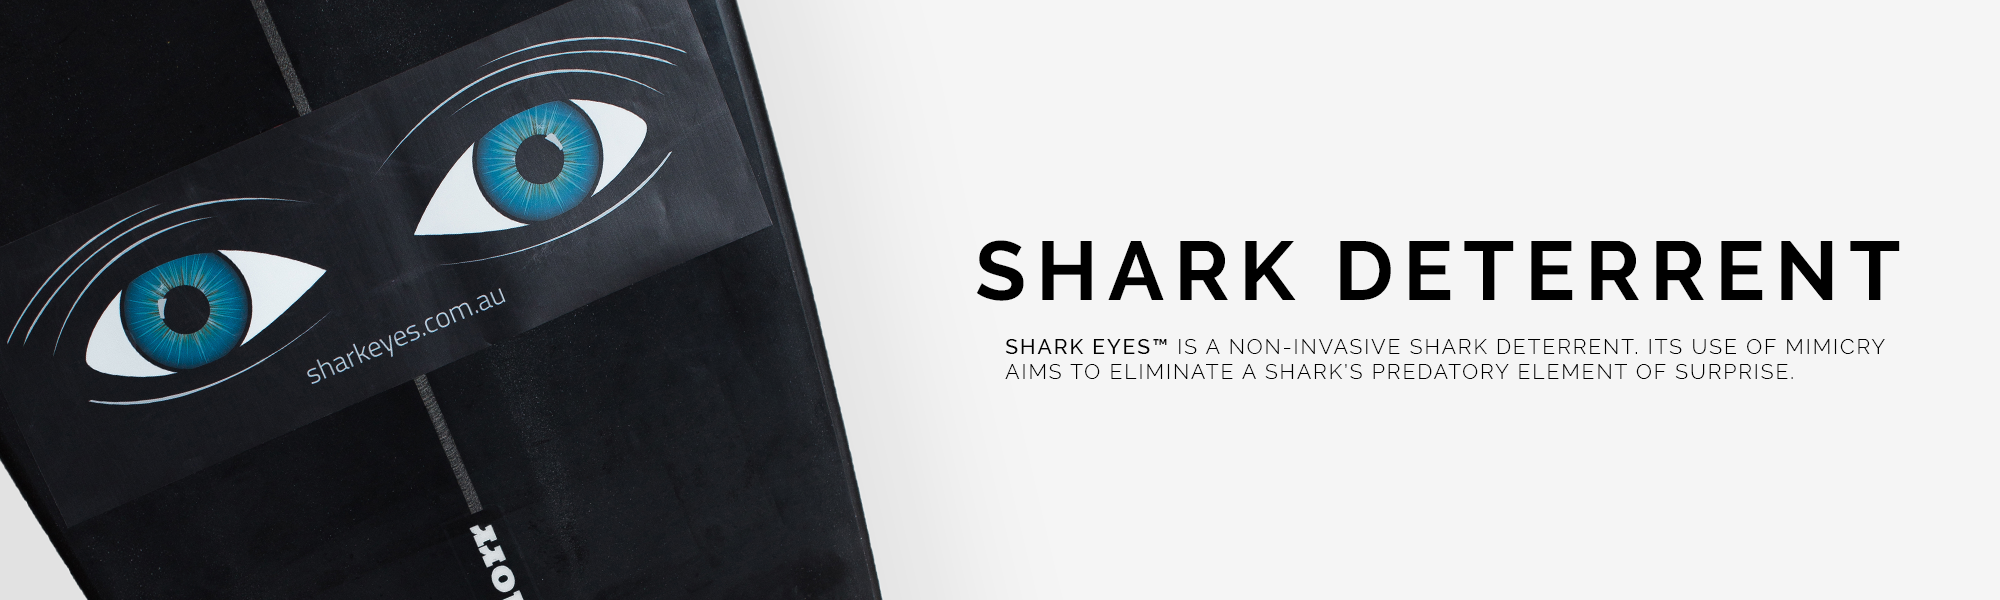 Shark_Deterrents-Shark Eyes Global